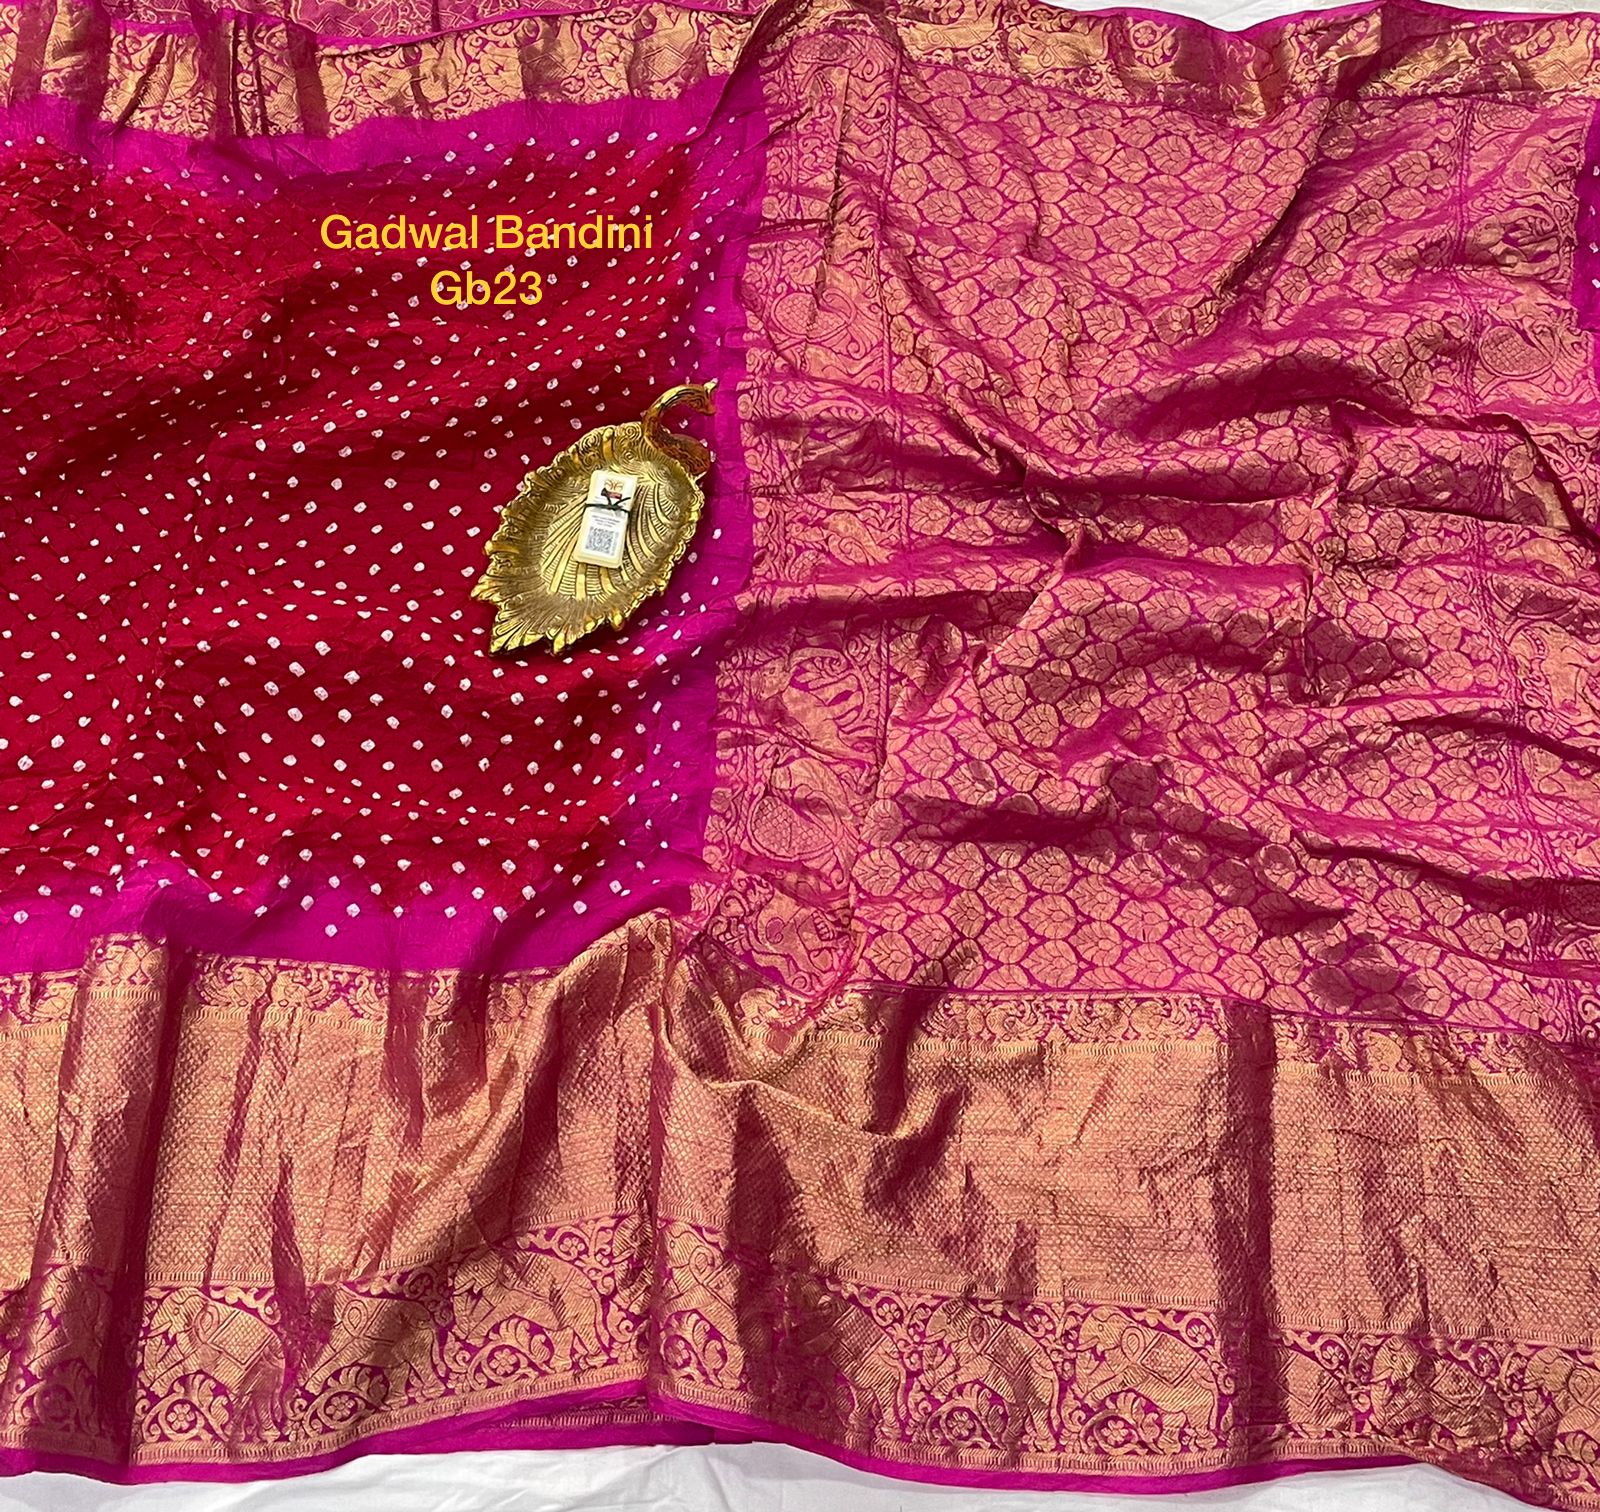 Handloom.gadwal kanchi border bandhini sarees